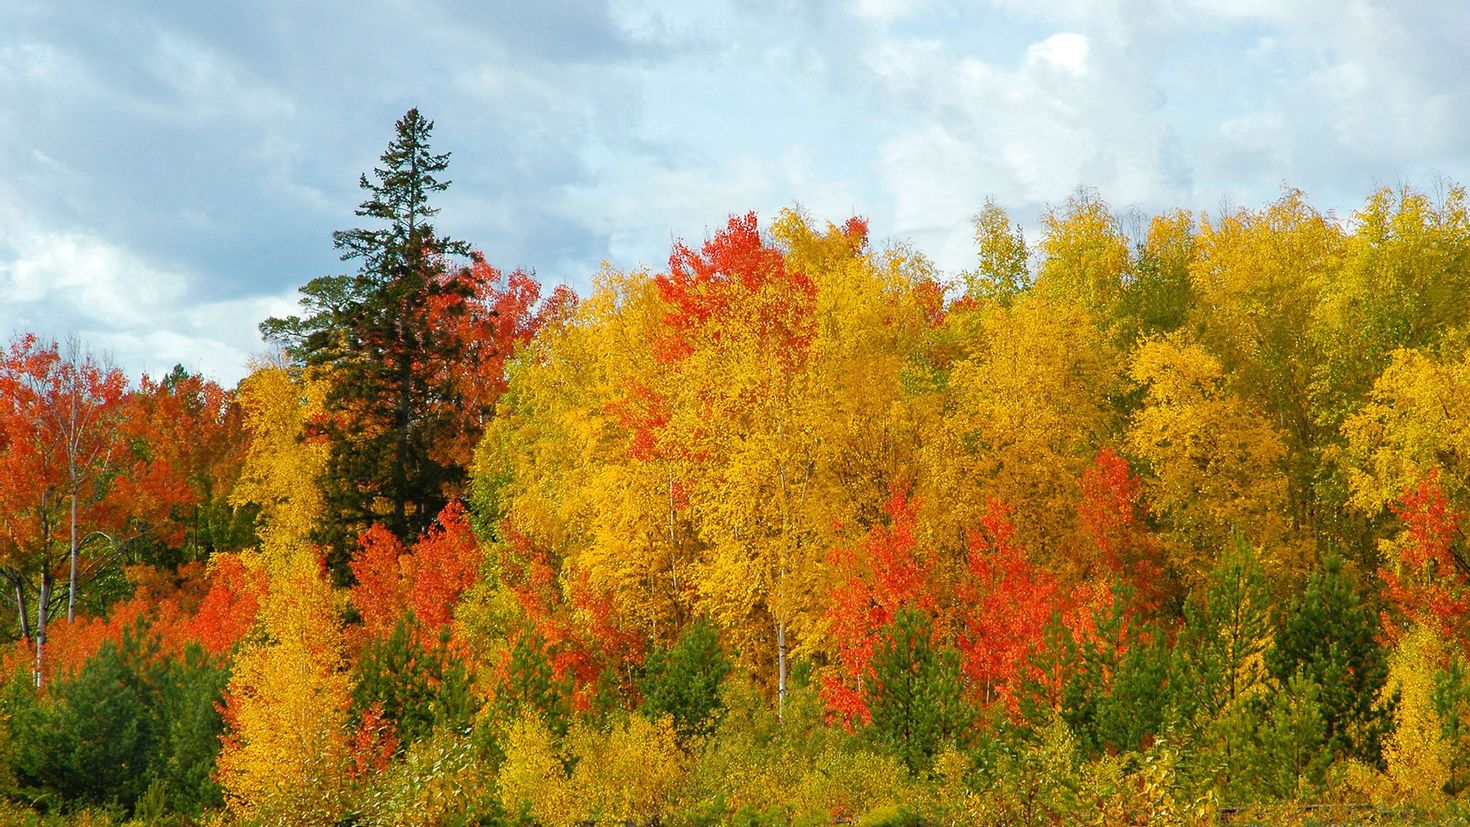 Вот и пришла разноцветная осень. Лес точно Терем расписной лиловый. Лес точно Терем расписной лиловый золотой багряный. Осенний лес лиловый золотой багряный. Осенний лес.